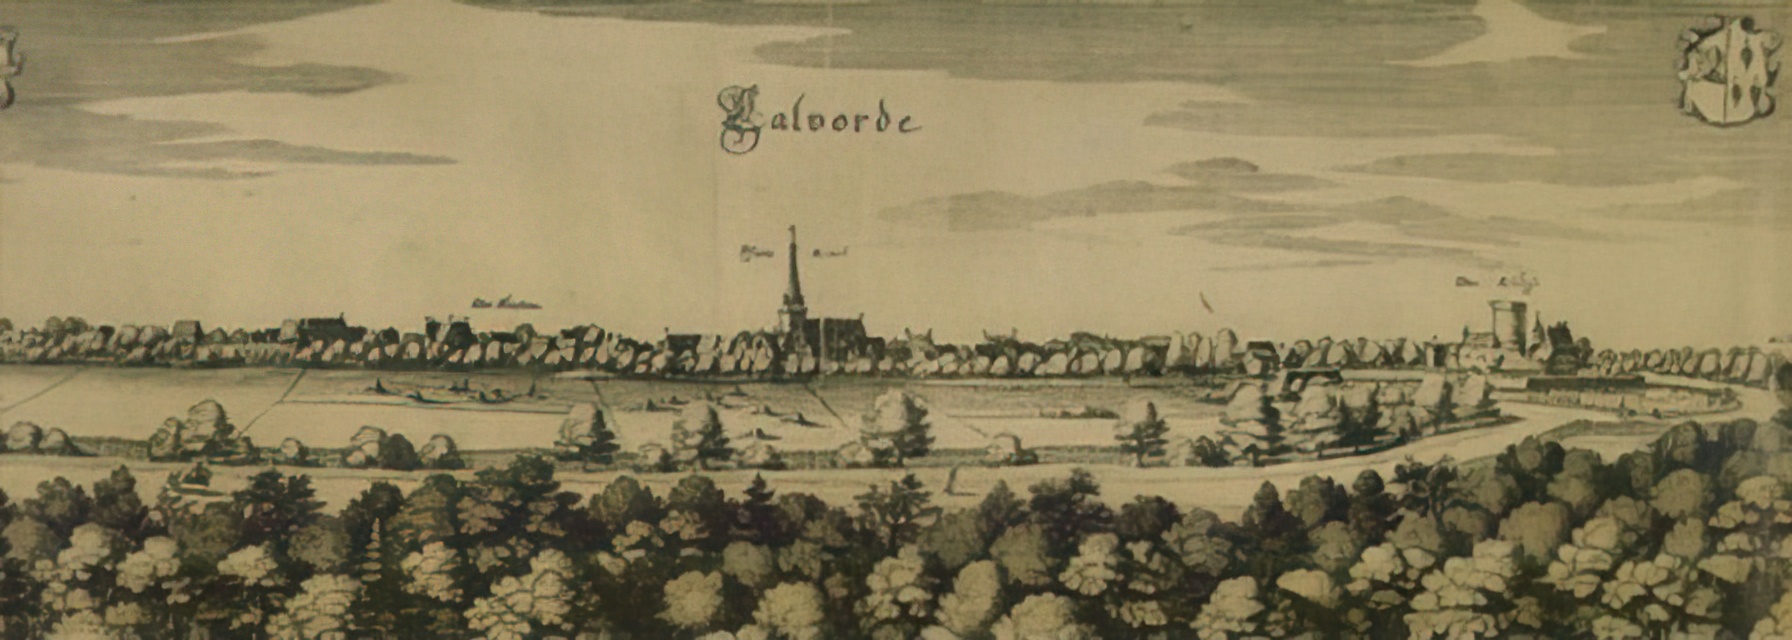 Calvörde um 1650 von Merian: rechts im Bild die Burg